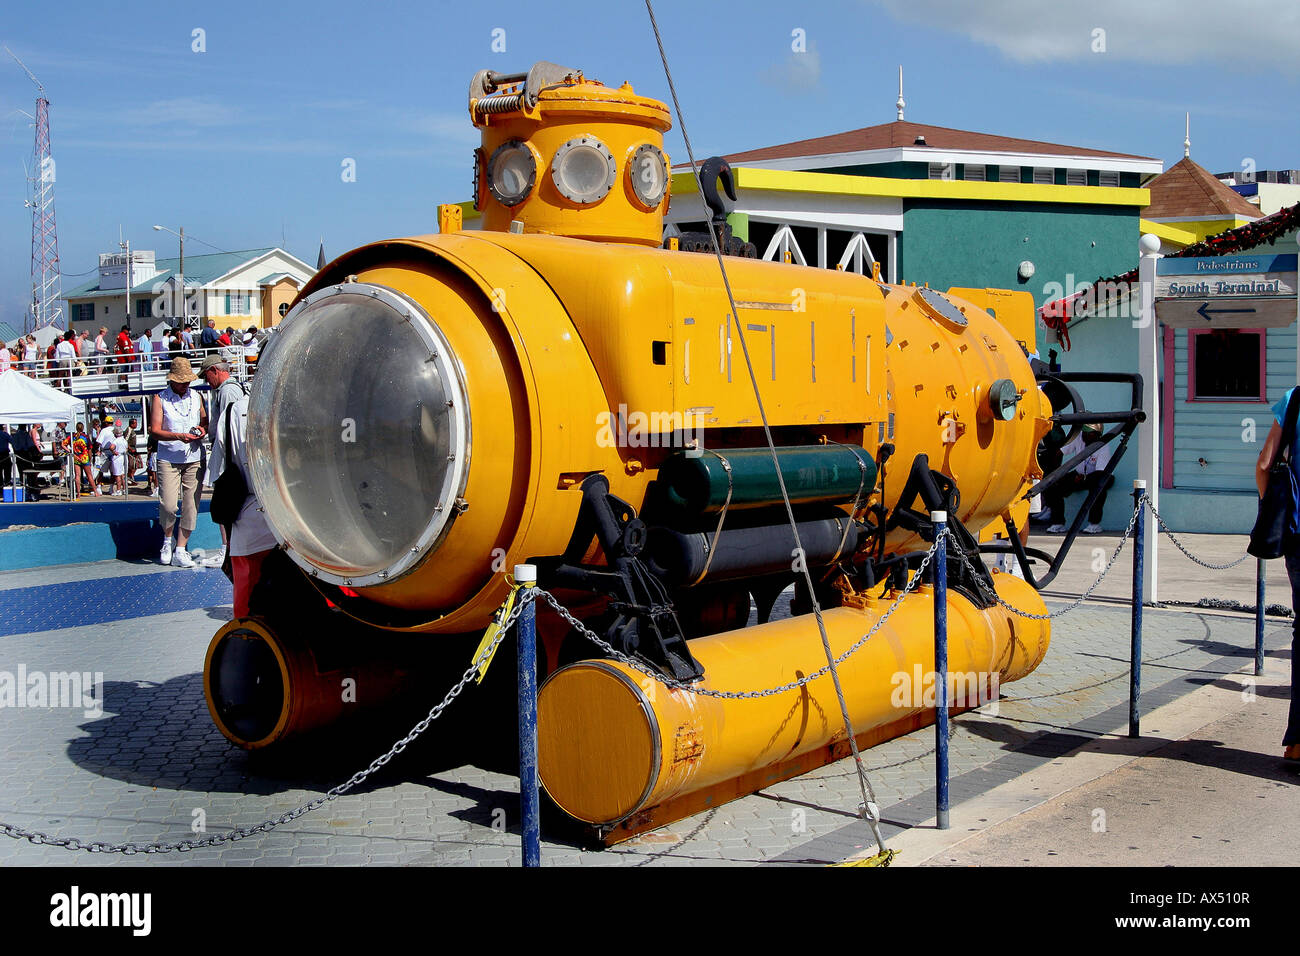 Ozean Forschung u-Boot lenkt die Aufmerksamkeit von Touristen auf Dock auf den Grand Cayman Inseln der Karibik nicht freigegeben Stockfoto